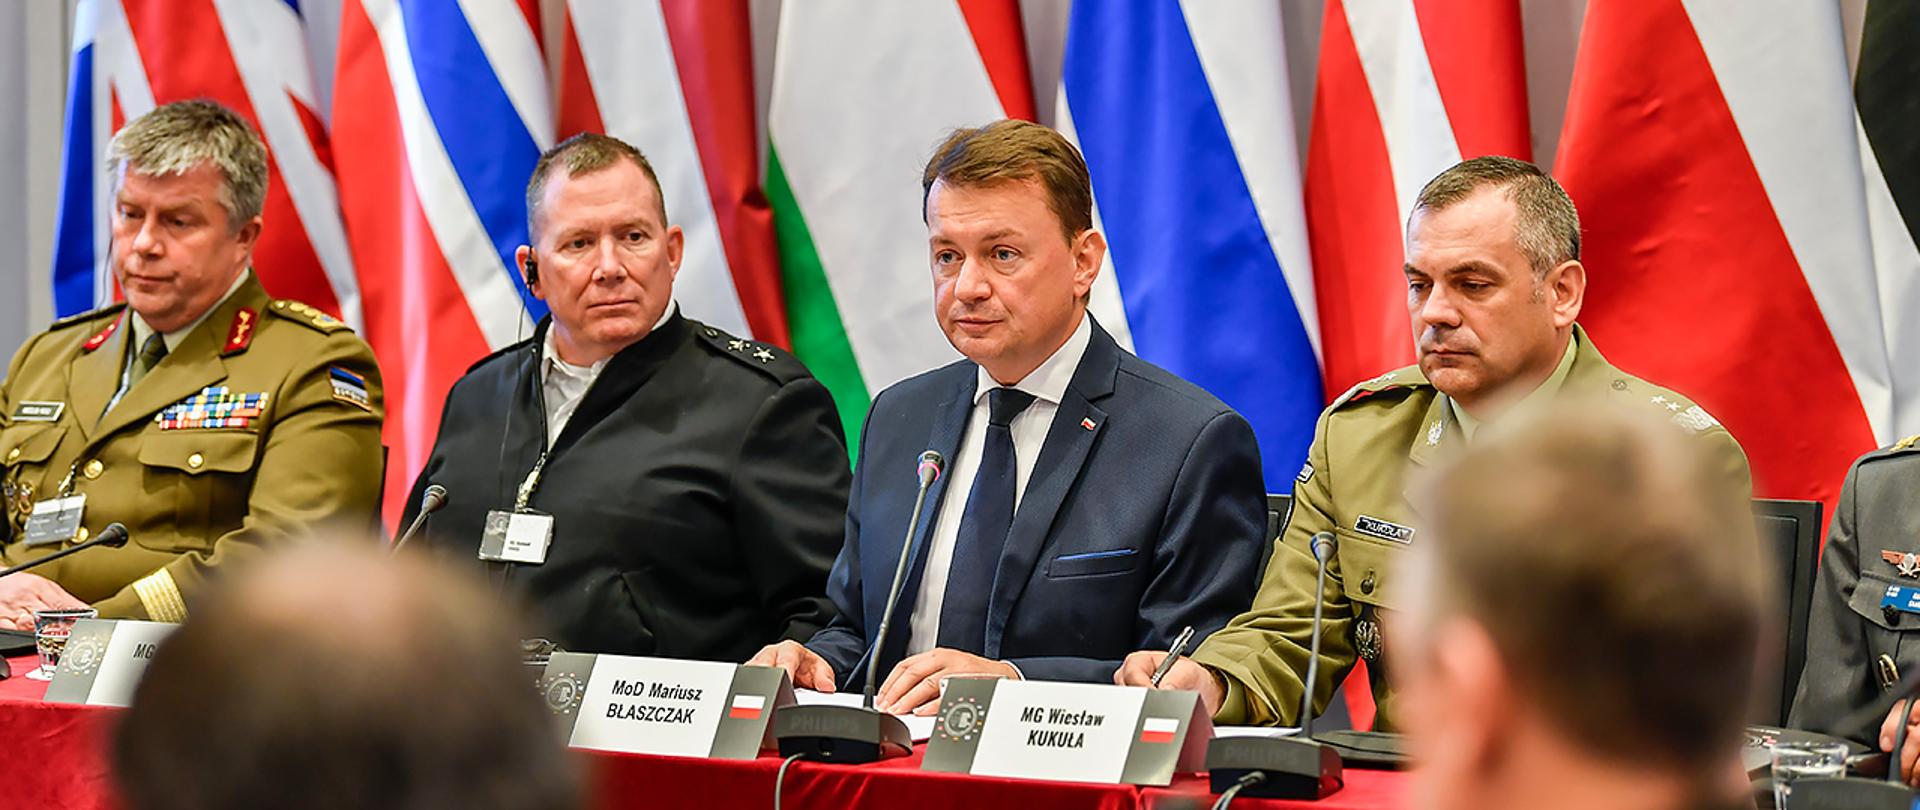 Obrady dowódców obrony terytorialnej w ramach Europejskiej Inicjatywy Regionalnej OT, zorganizowanej w dniach 9-11 października w Warszawie.